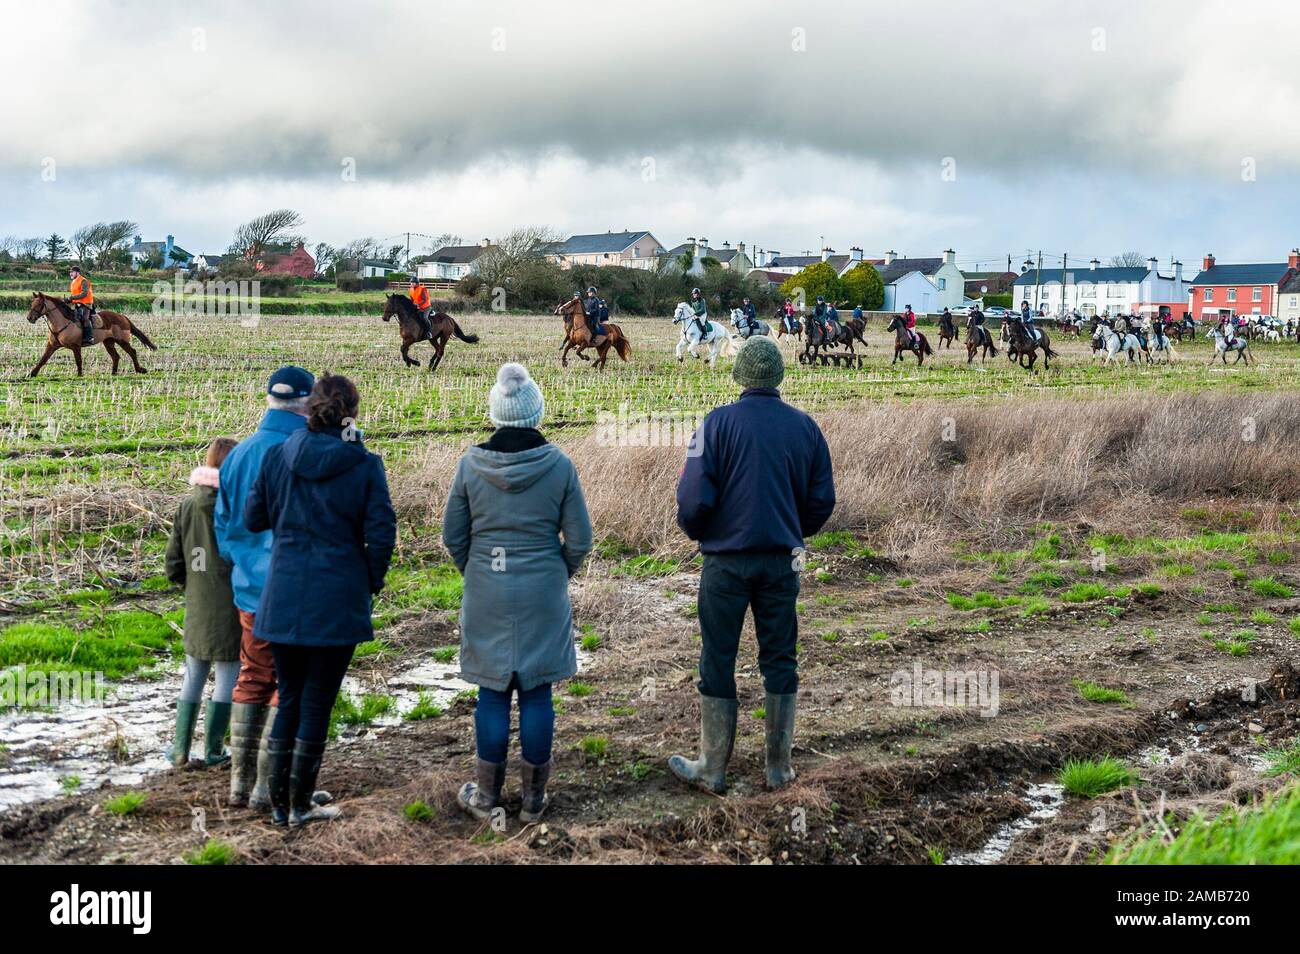 Butlerstown, West Cork, Irlanda. 12 de enero de 2020. El paseo anual Carberry Hunt Butlerstown Fun Ride tuvo lugar hoy en día con cientos de caballos y jinetes participando. Crédito: Andy Gibson/Alamy Live News Foto de stock